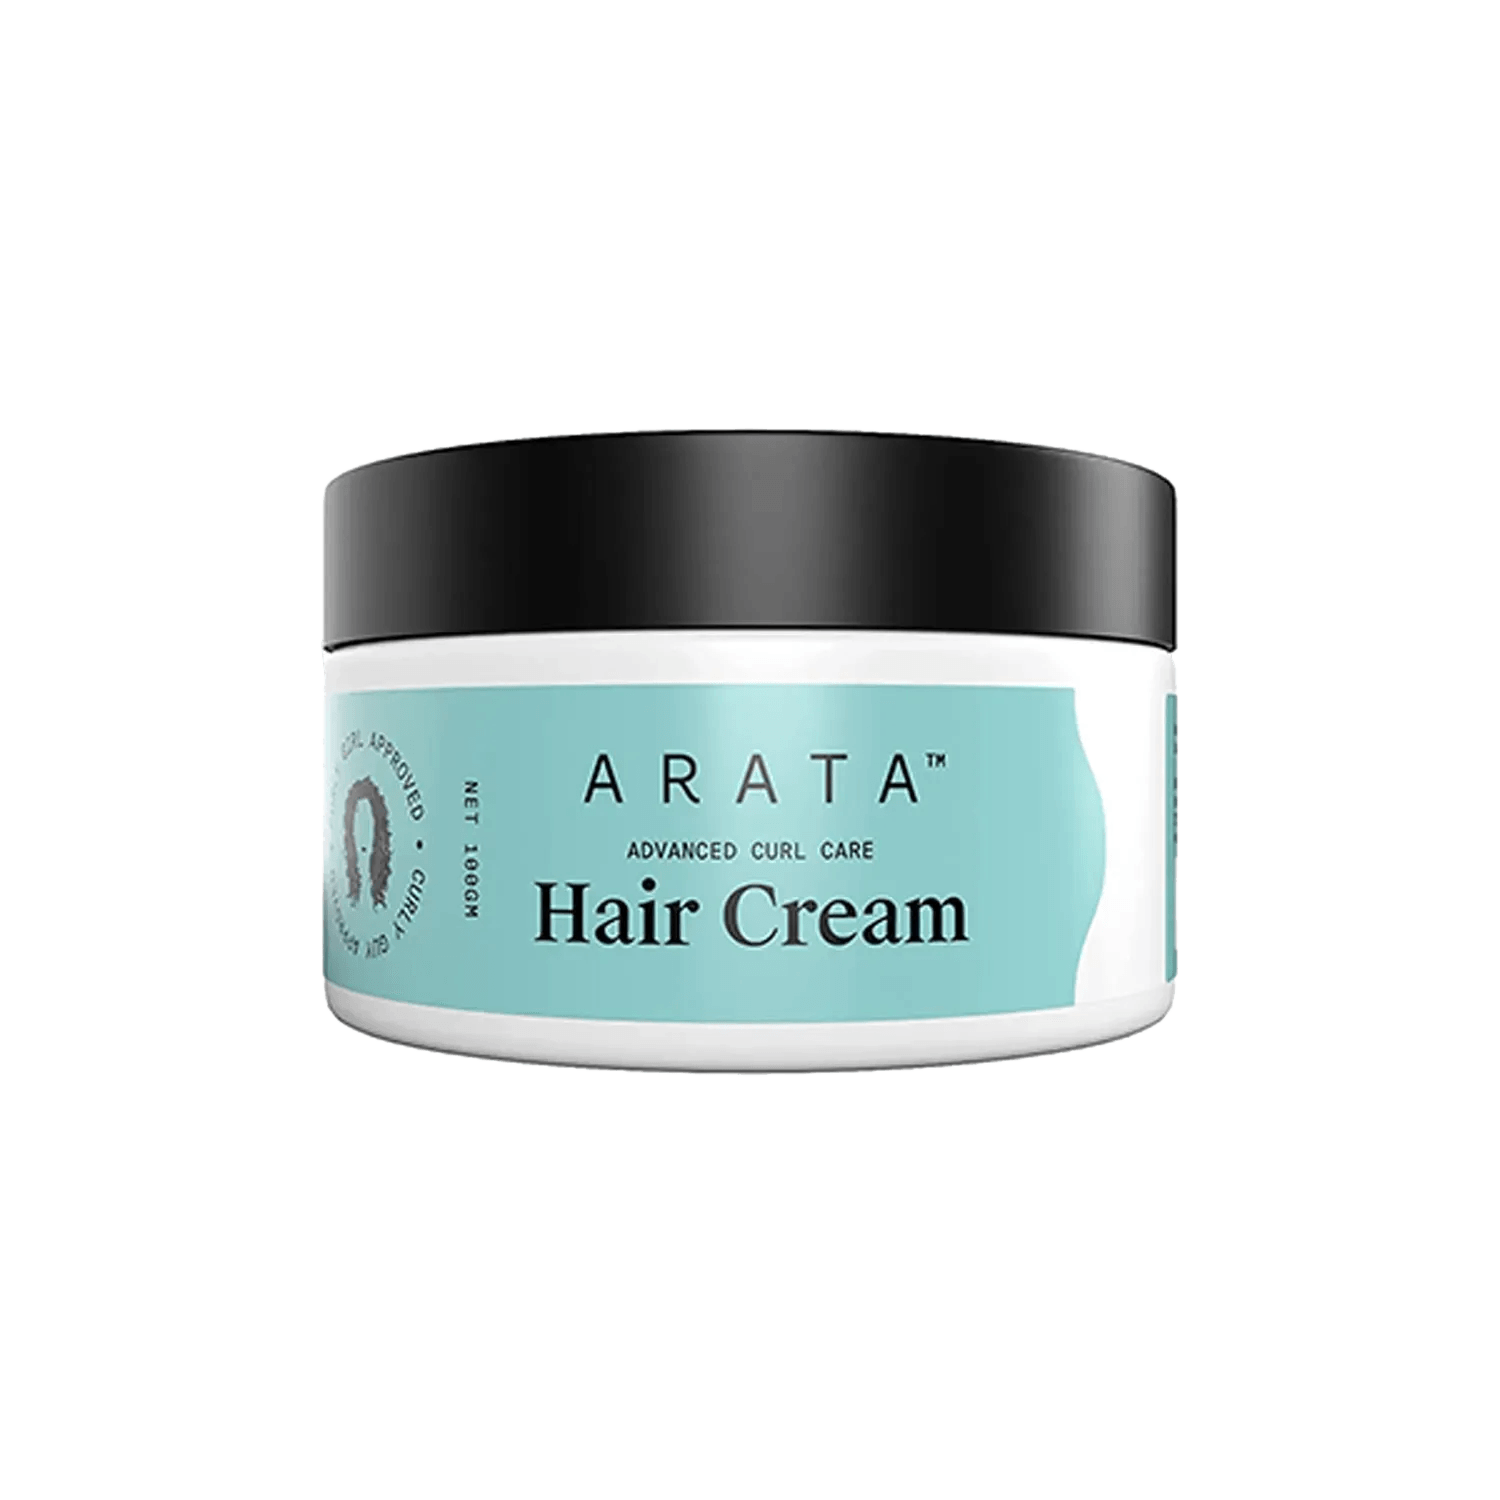 Arata Advanced Curl Care Hair Cream (100g)